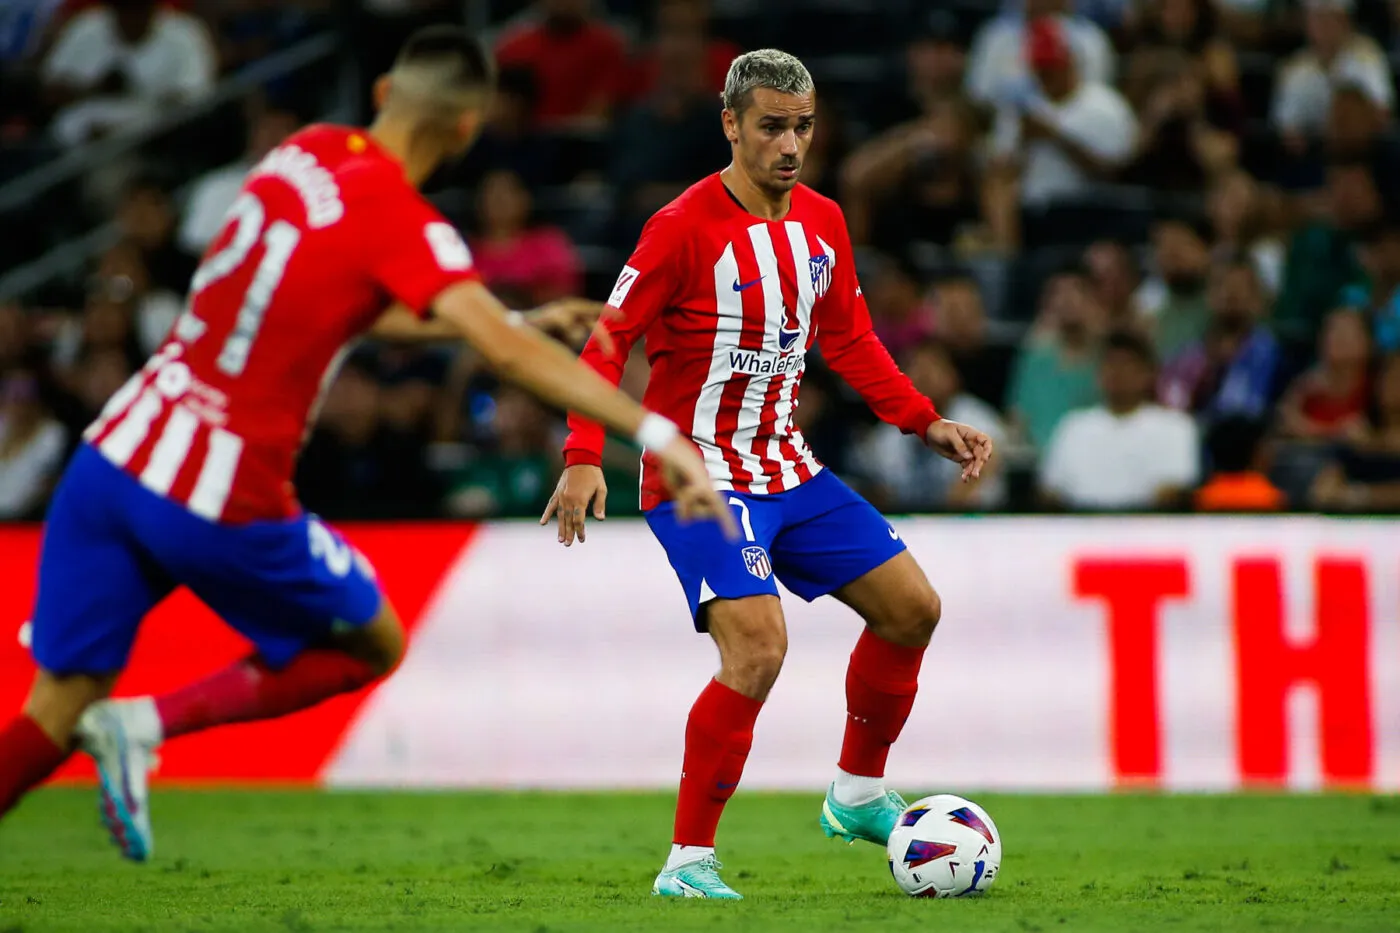 Pronostic Atlético Madrid Grenade : Analyse, cotes et prono du match de Liga